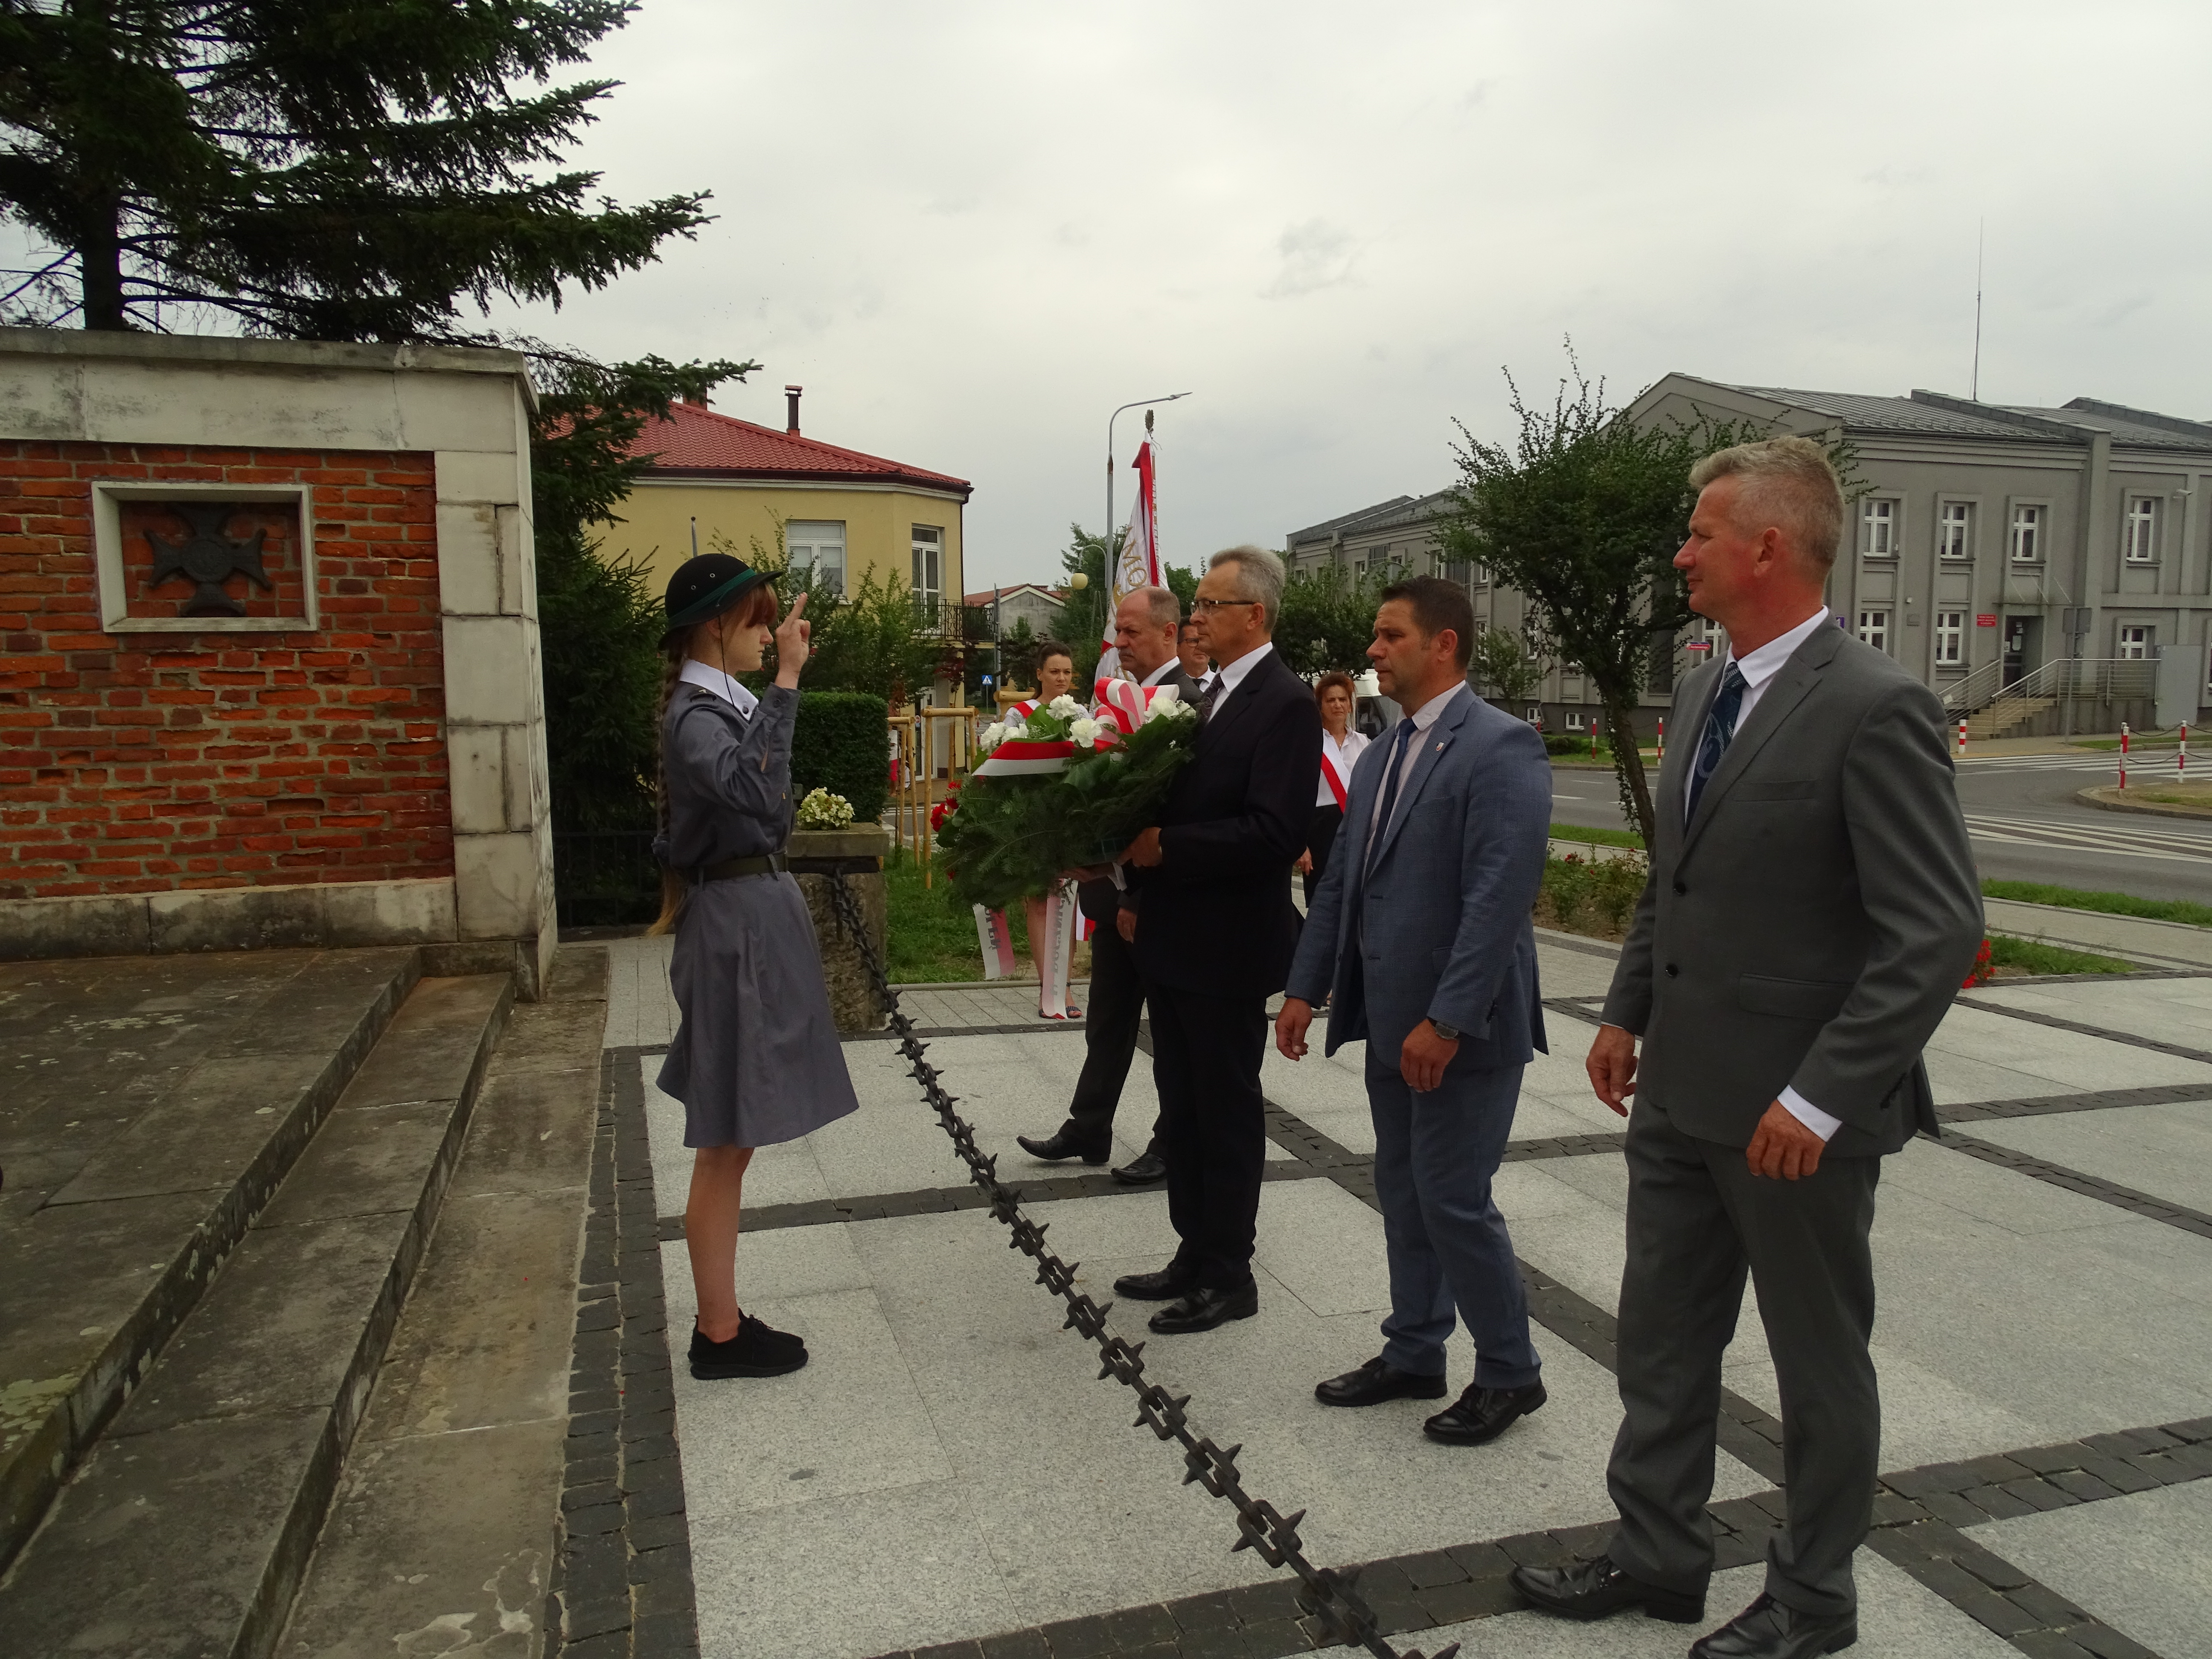 Kwiaty przy pomniku złożyli przedstawiciele Gminy Zwoleń na  czele z Burmistrzem Zwolenia Arkadiuszem Sulimą (drugi od lewej) oraz Przewodniczącym Rady Miejskiej Pawłem Sobieszkiem (pierwszy od lewej).